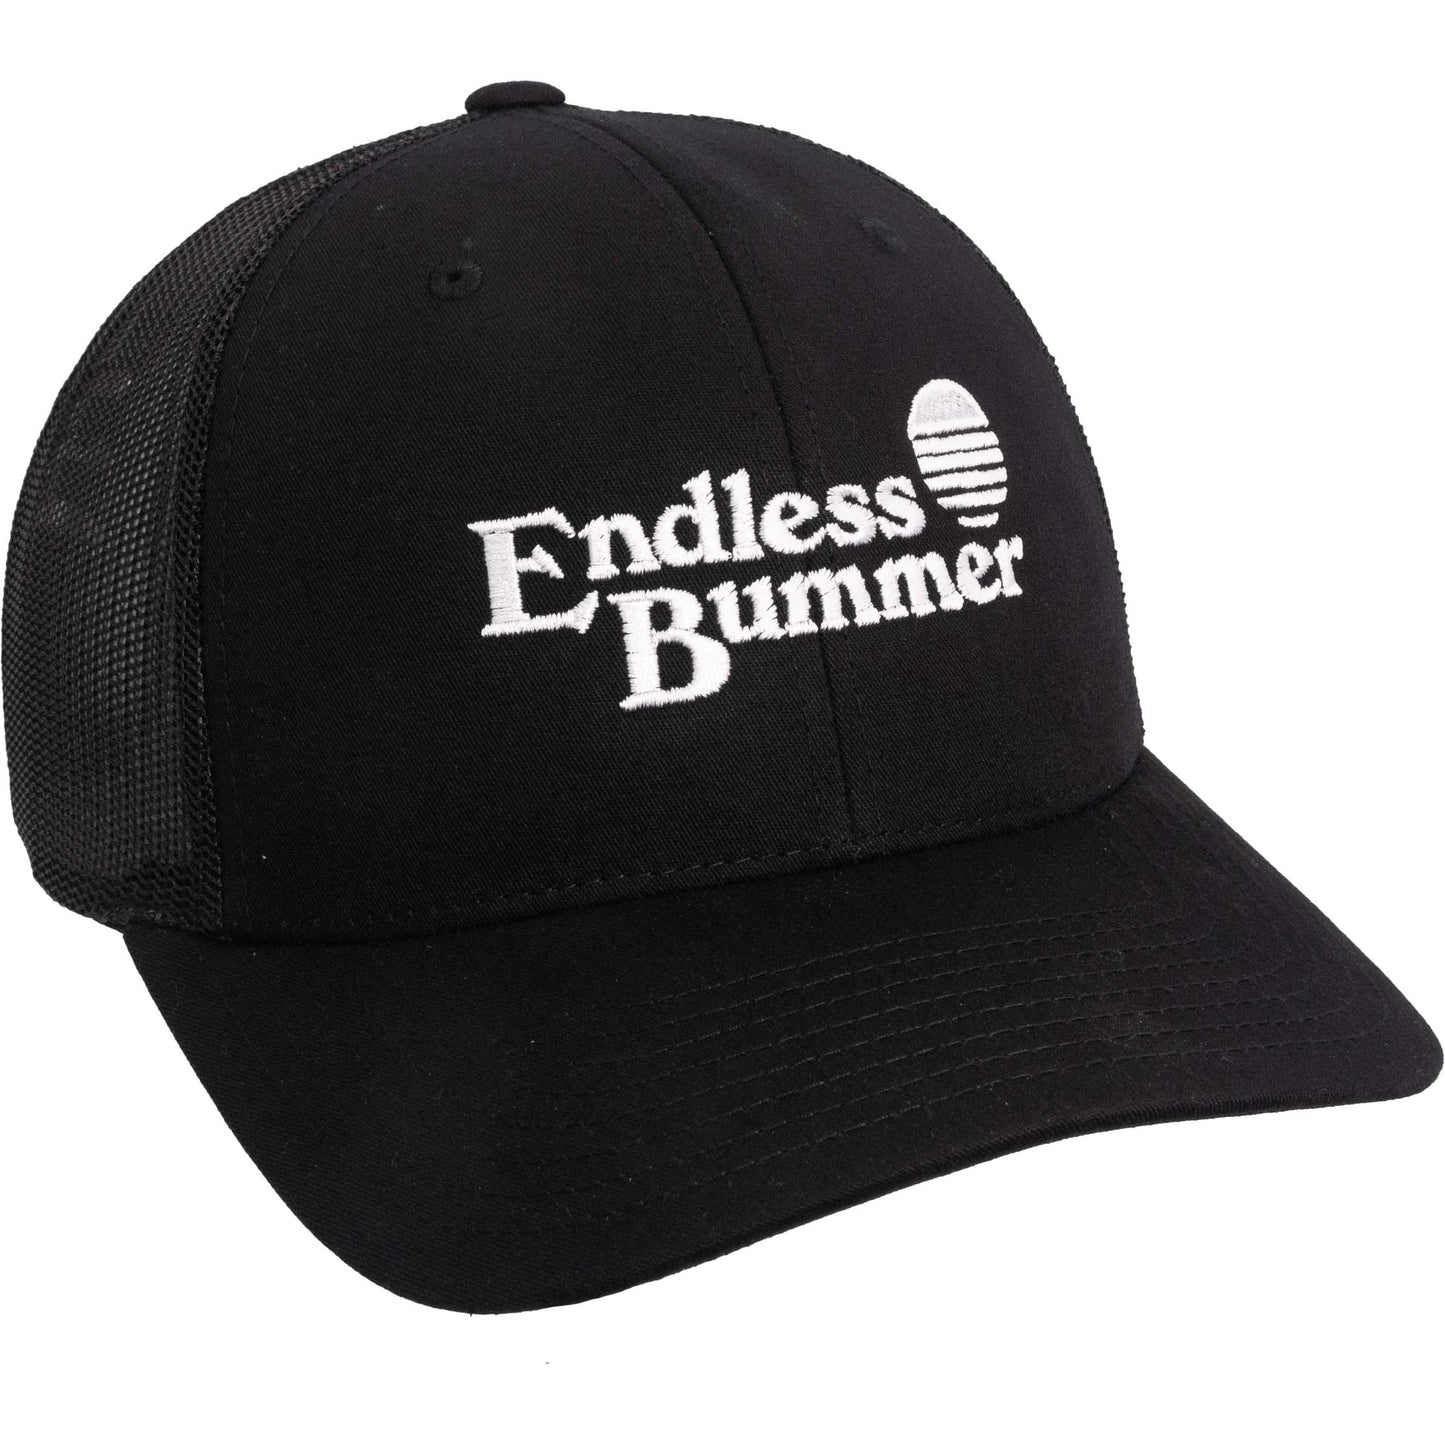 Endless Bummer Trucker Hat